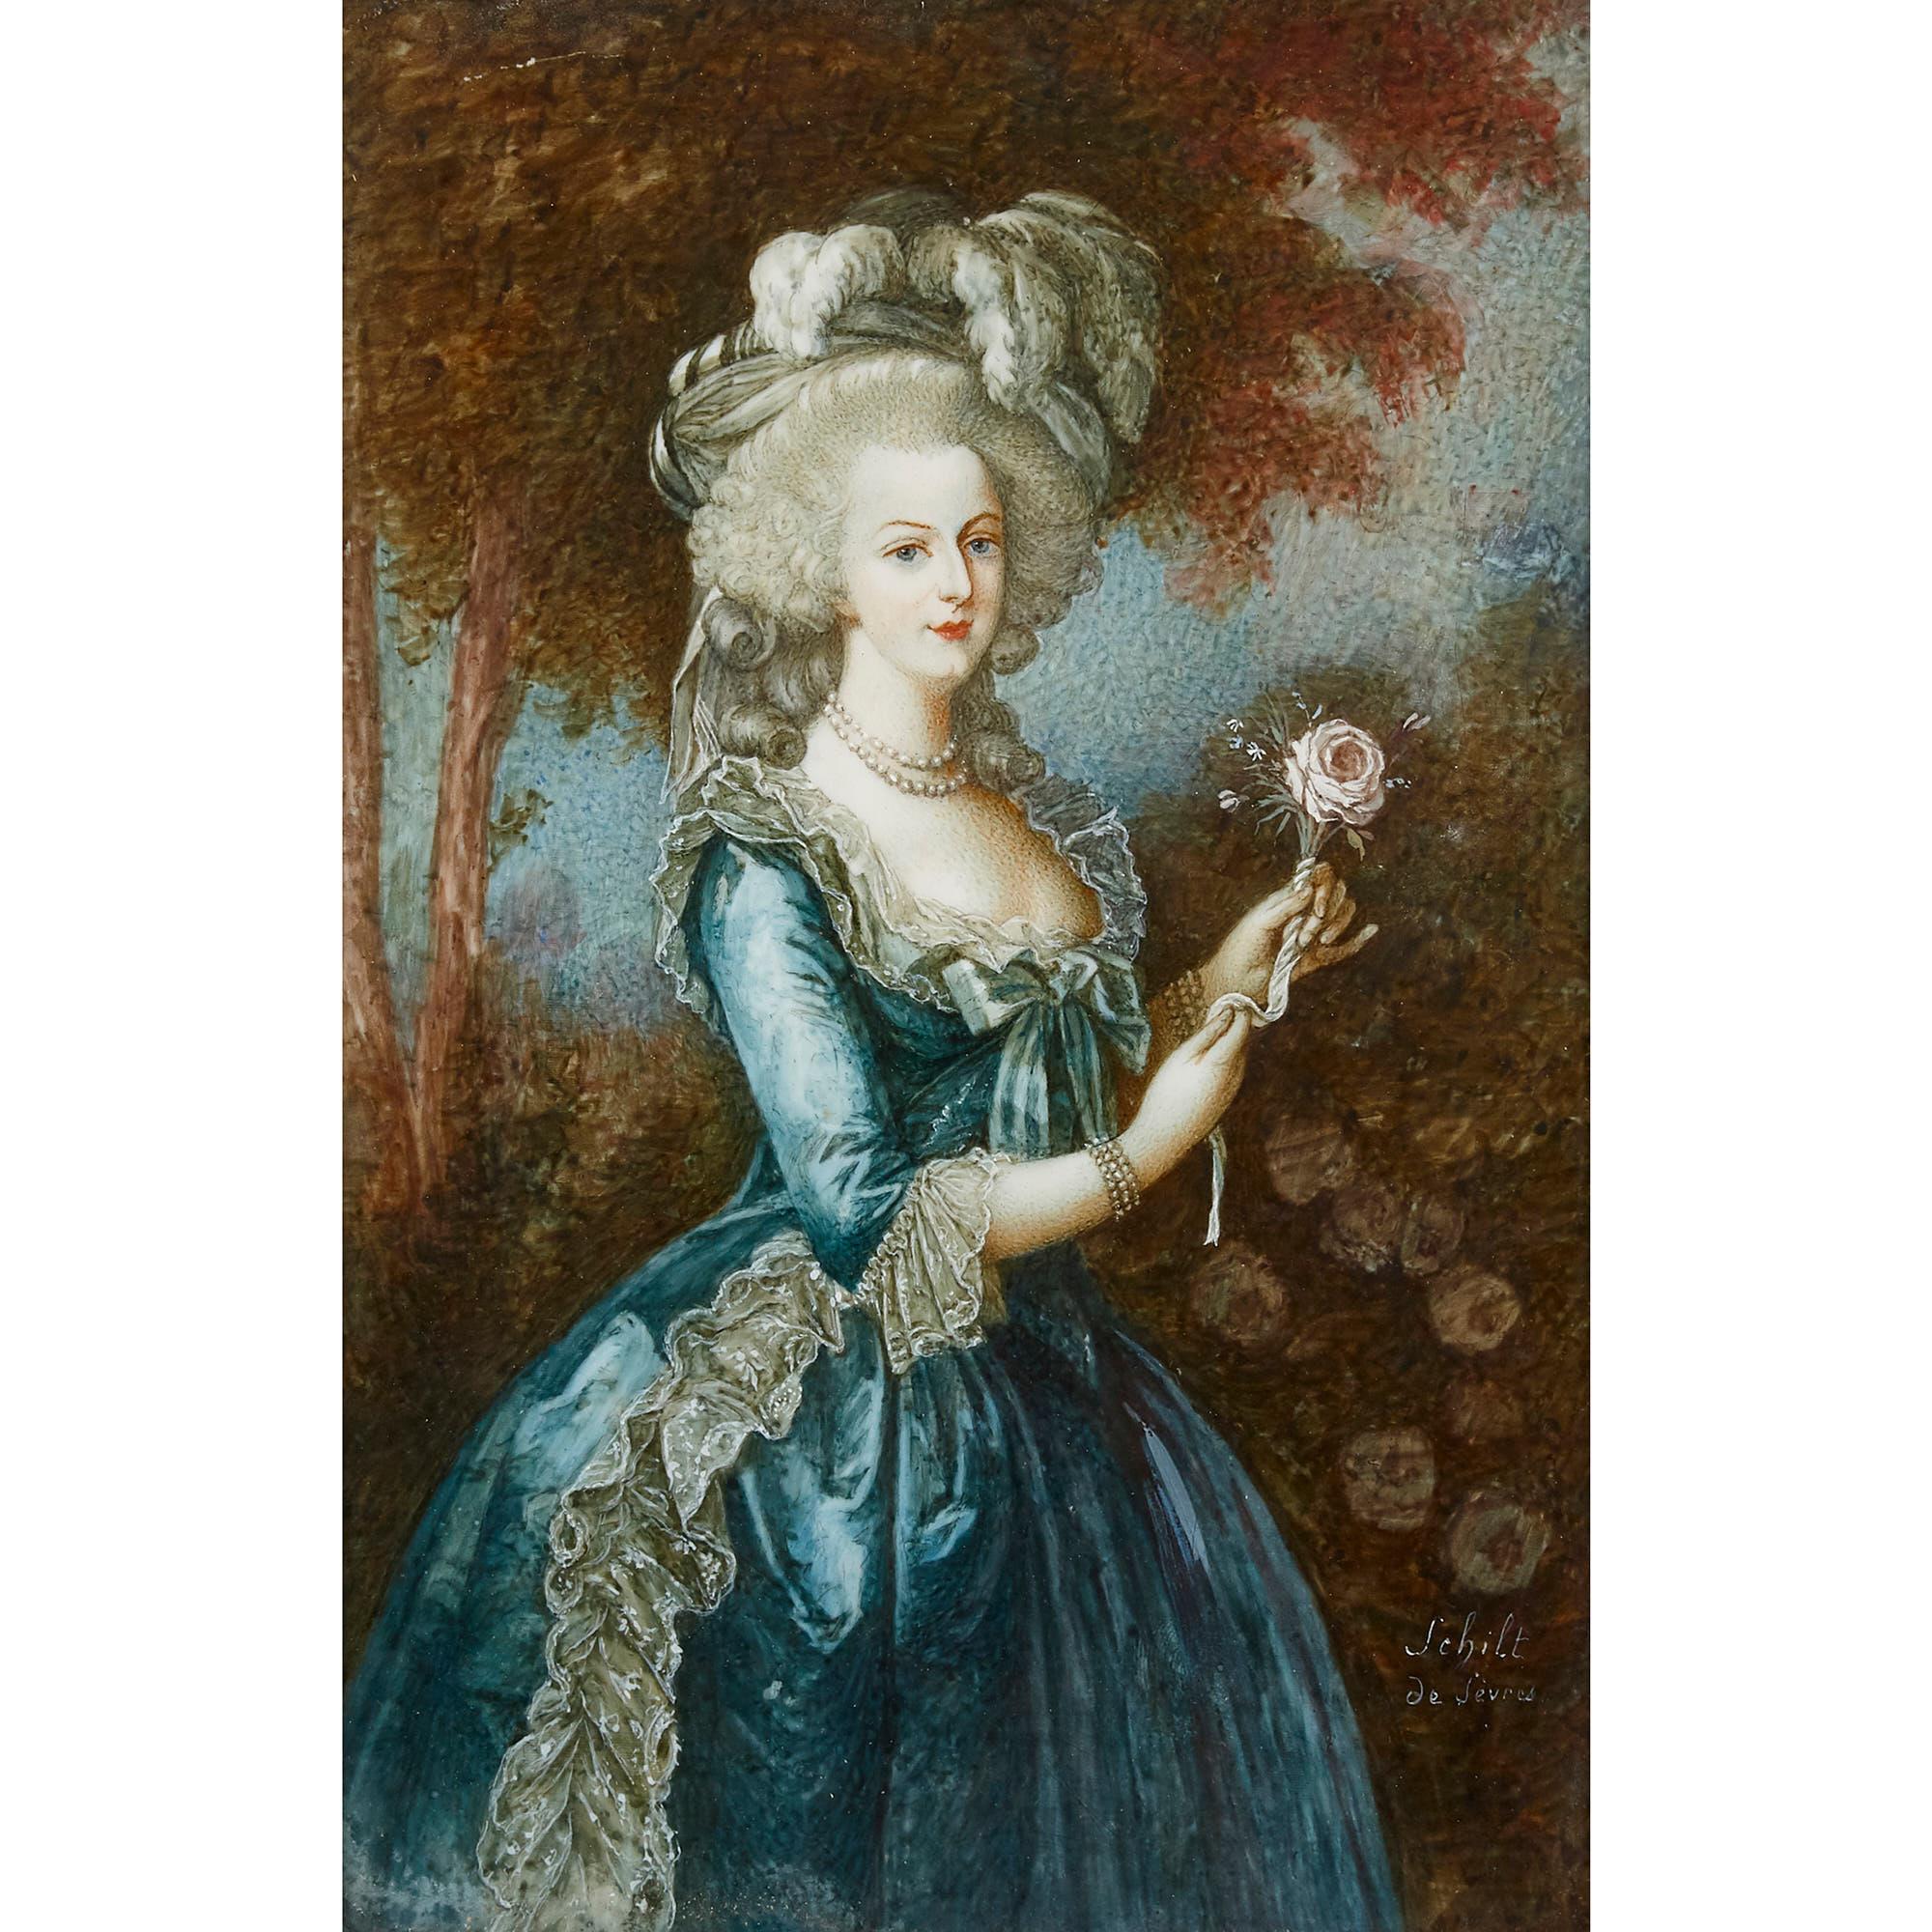 Diese Porträtminiatur, die Marie Antoinette darstellt, ist nach einem berühmten Original von Le Brun entstanden. Die aktuelle Miniatur ist fein und gekonnt gemalt und stellt die ehemalige französische Königin in schönen und zarten Tönen dar. Die